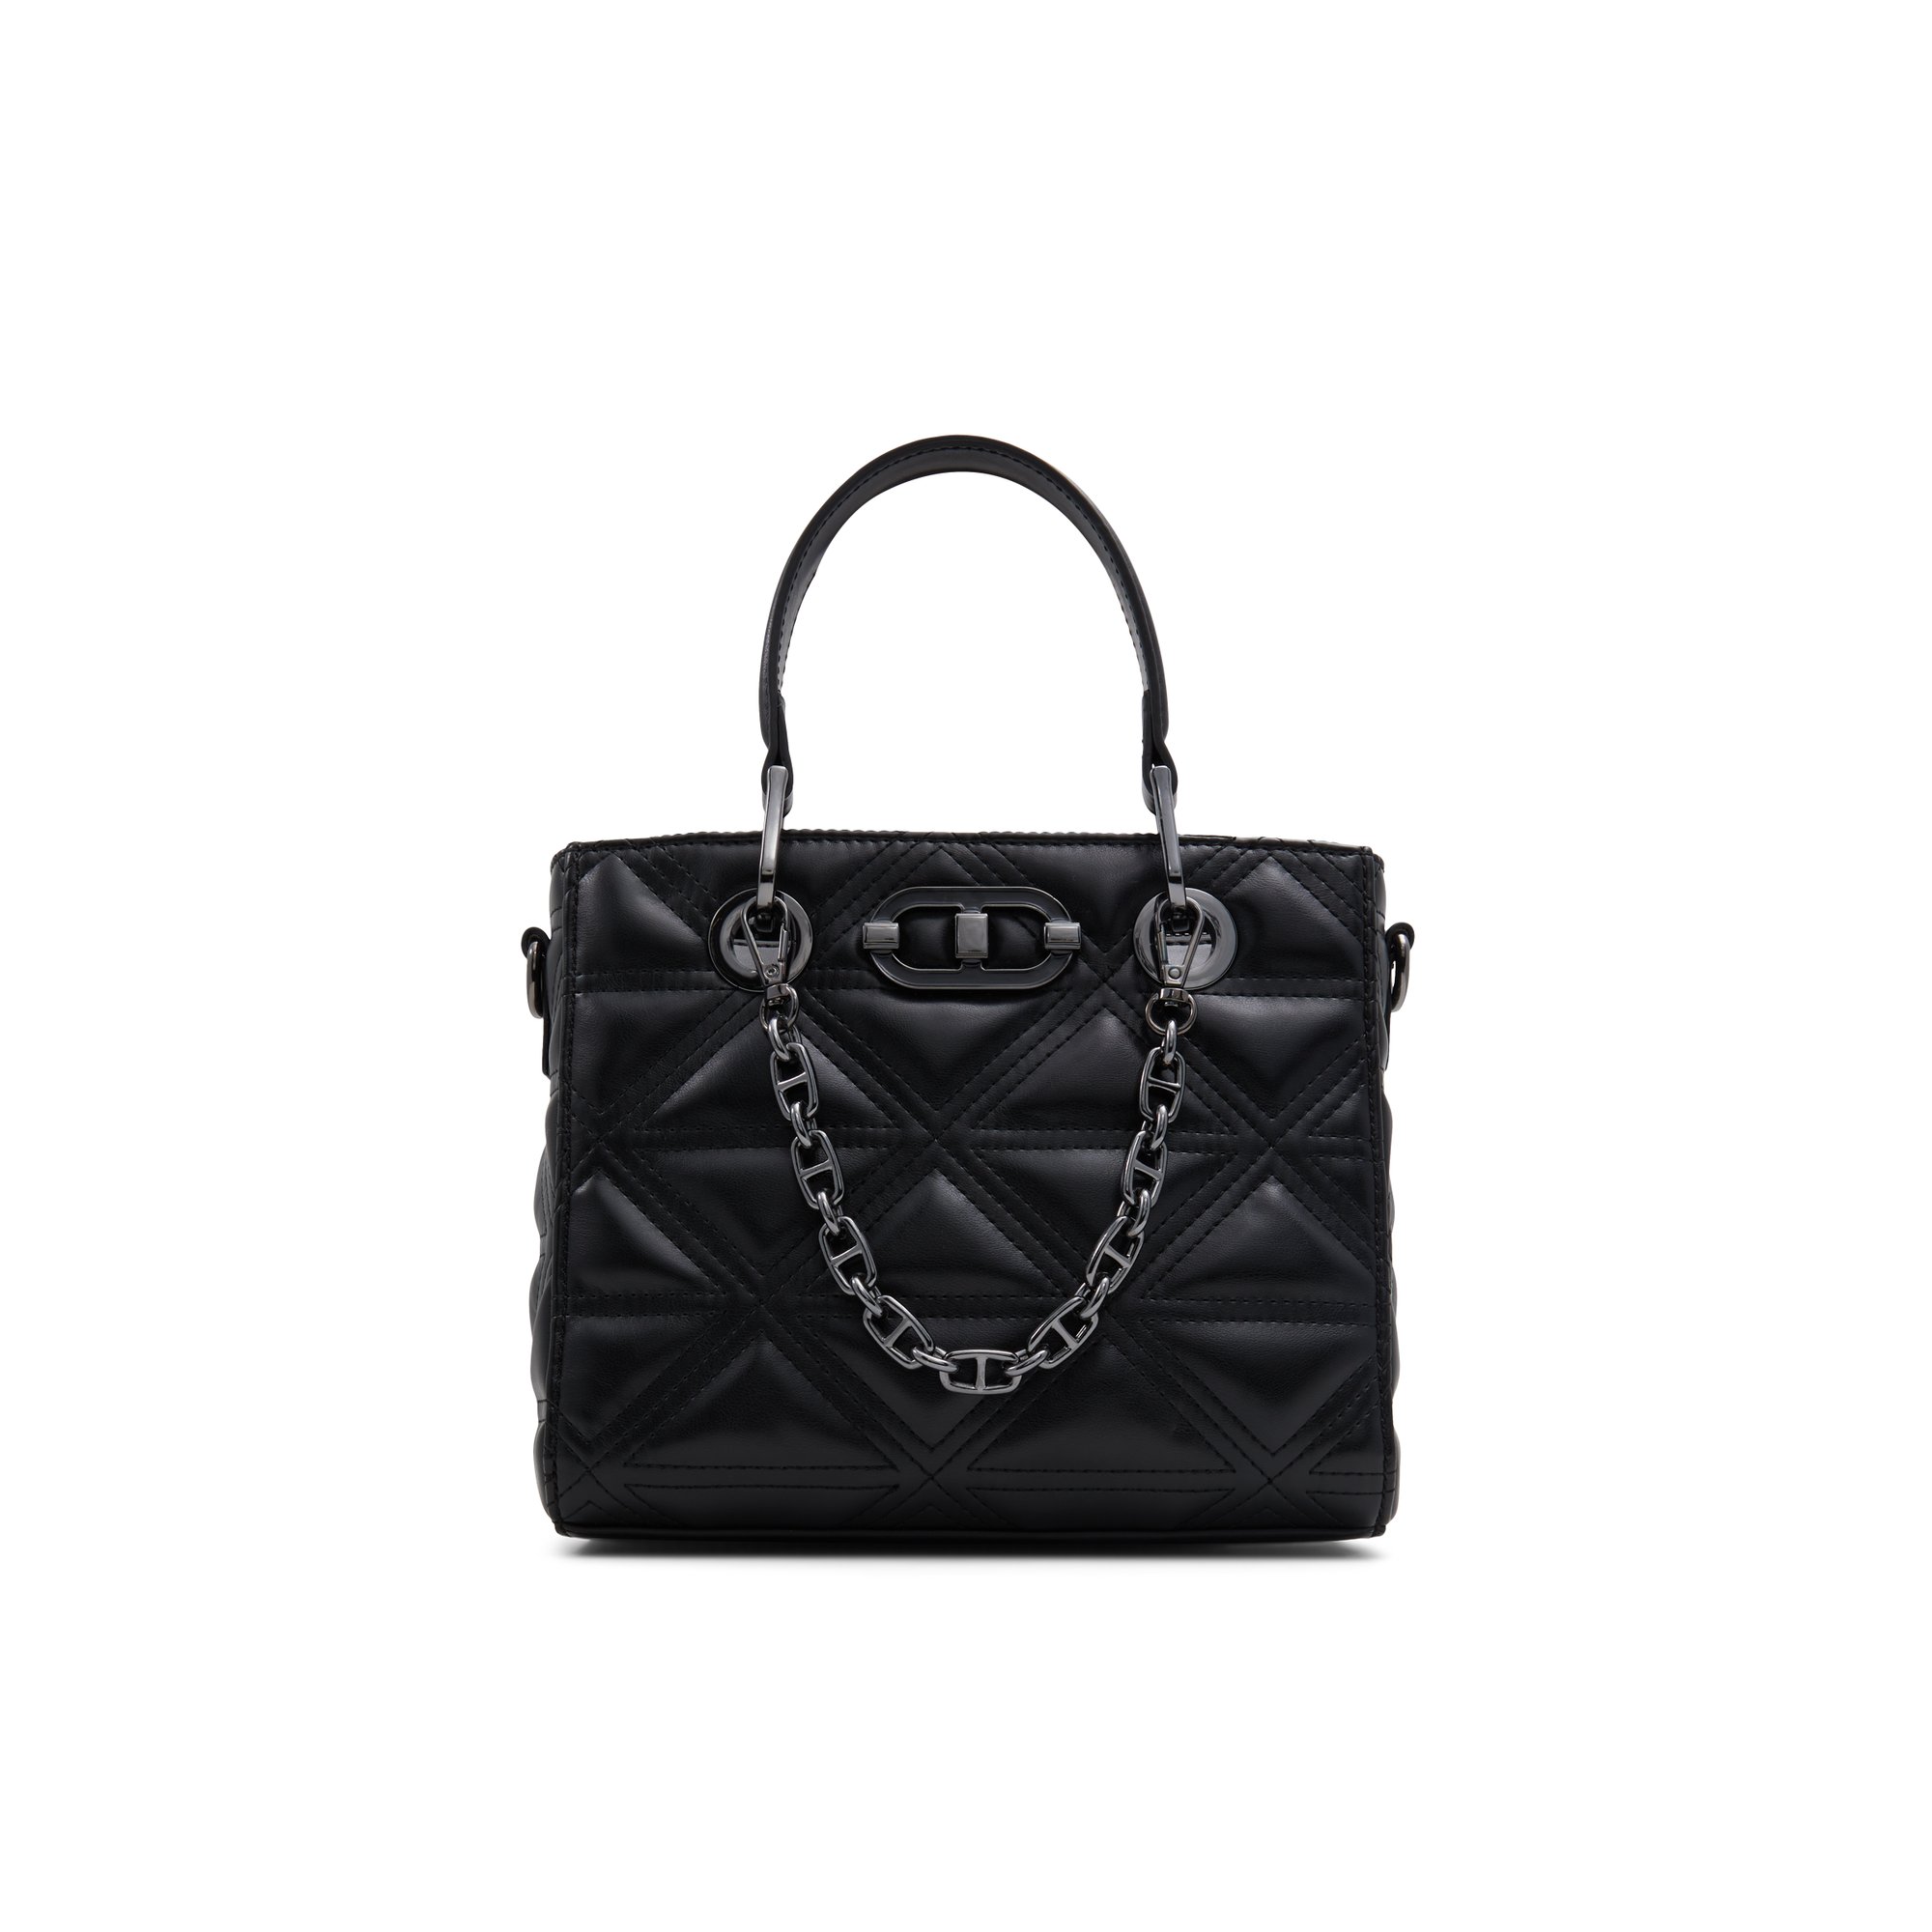 ALDO Nanadiix - Women's Handbags Totes - Black